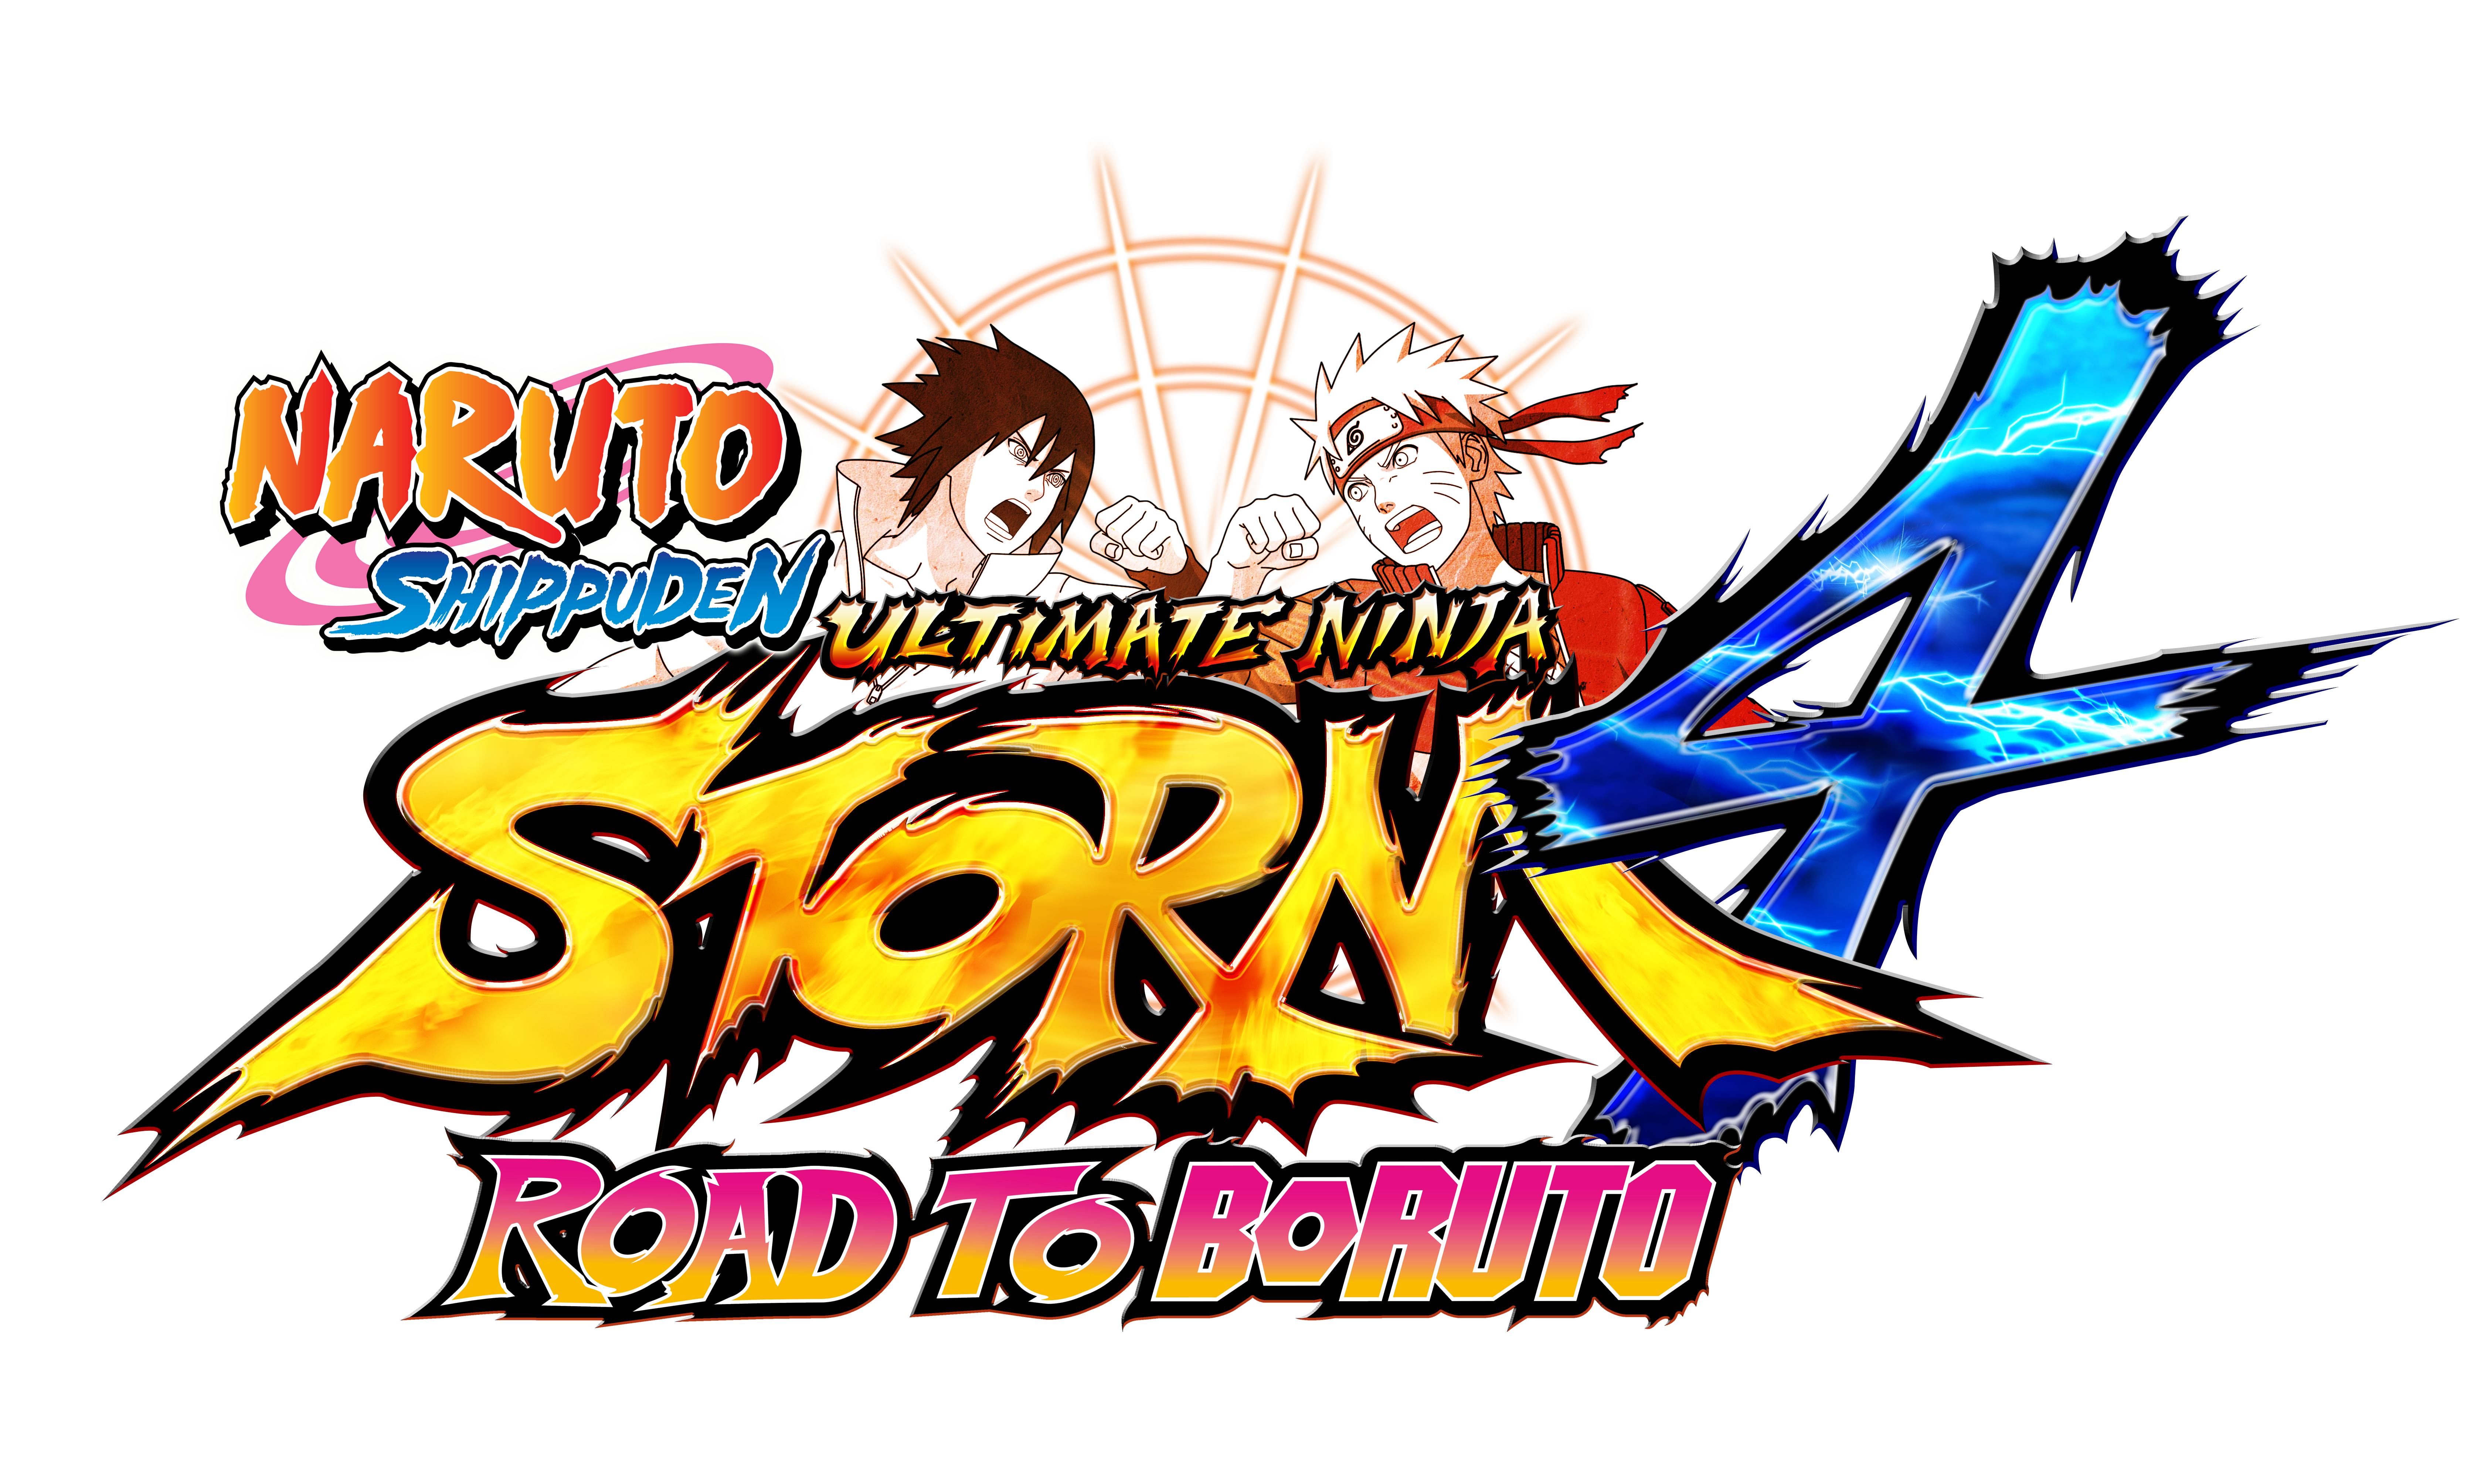 naruto ultimate ninja storm 4 road to boruto guide